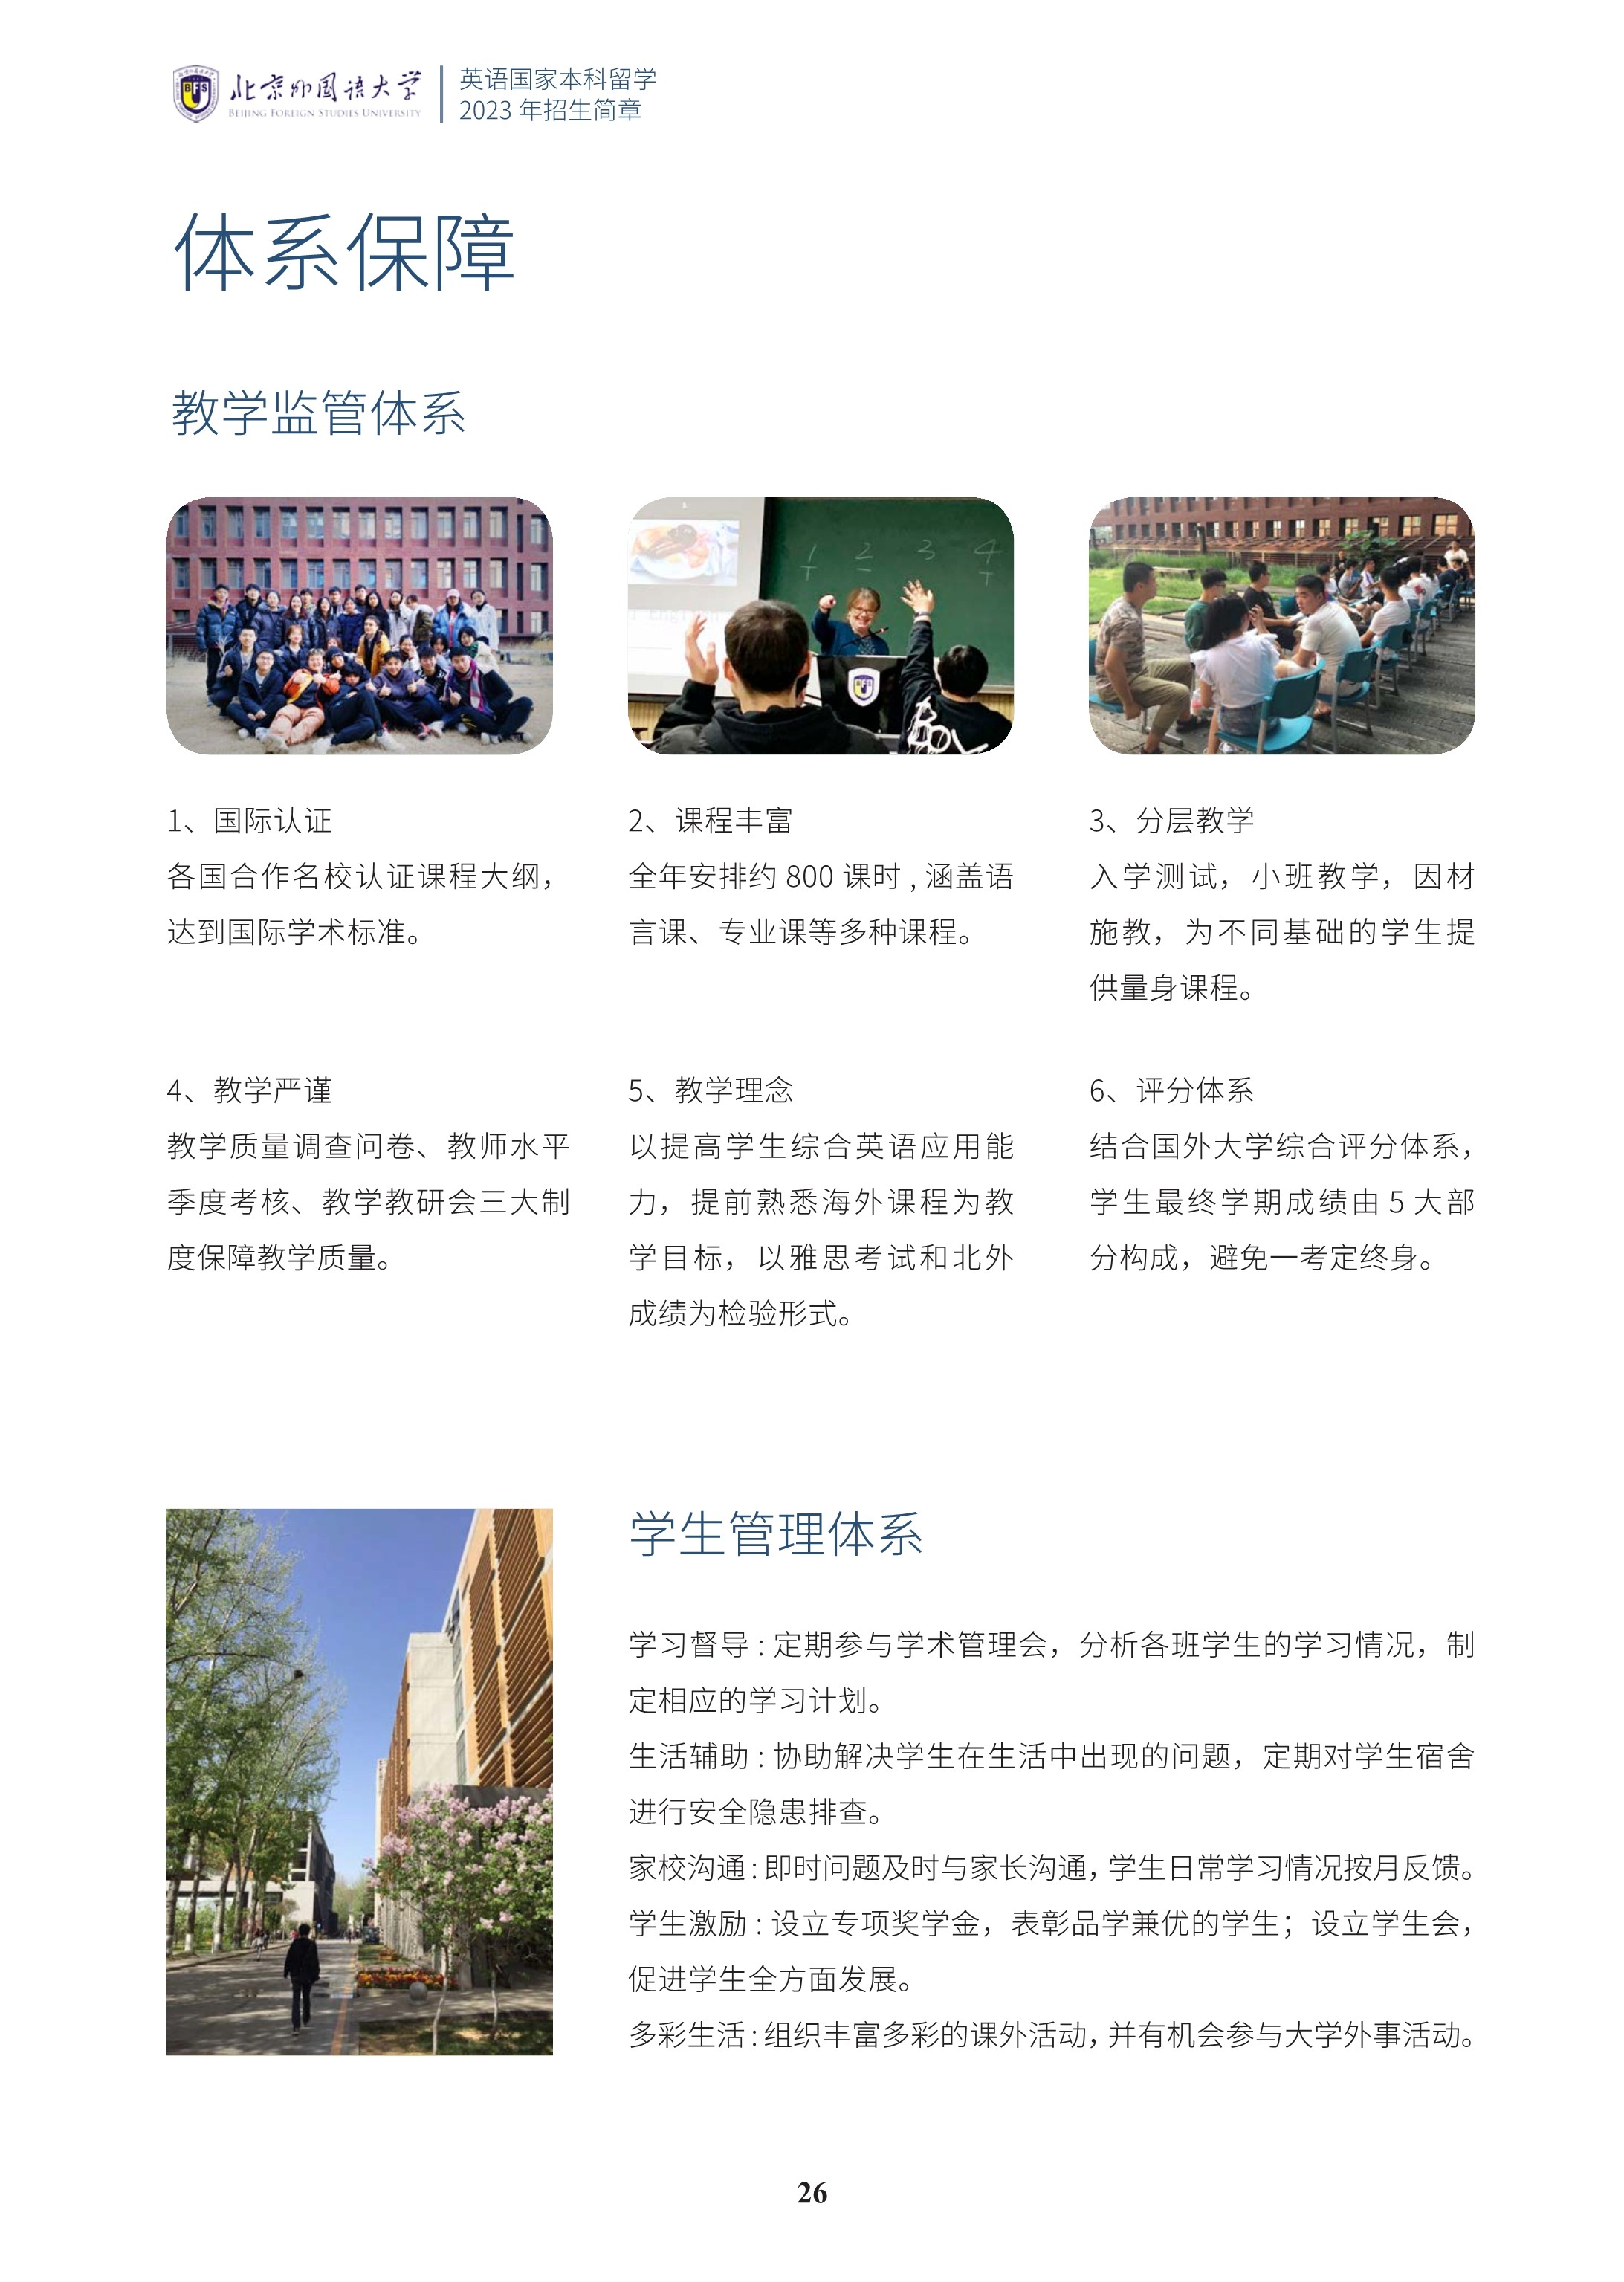 北京外国语大学1+3国际预科招生简章_27.jpg